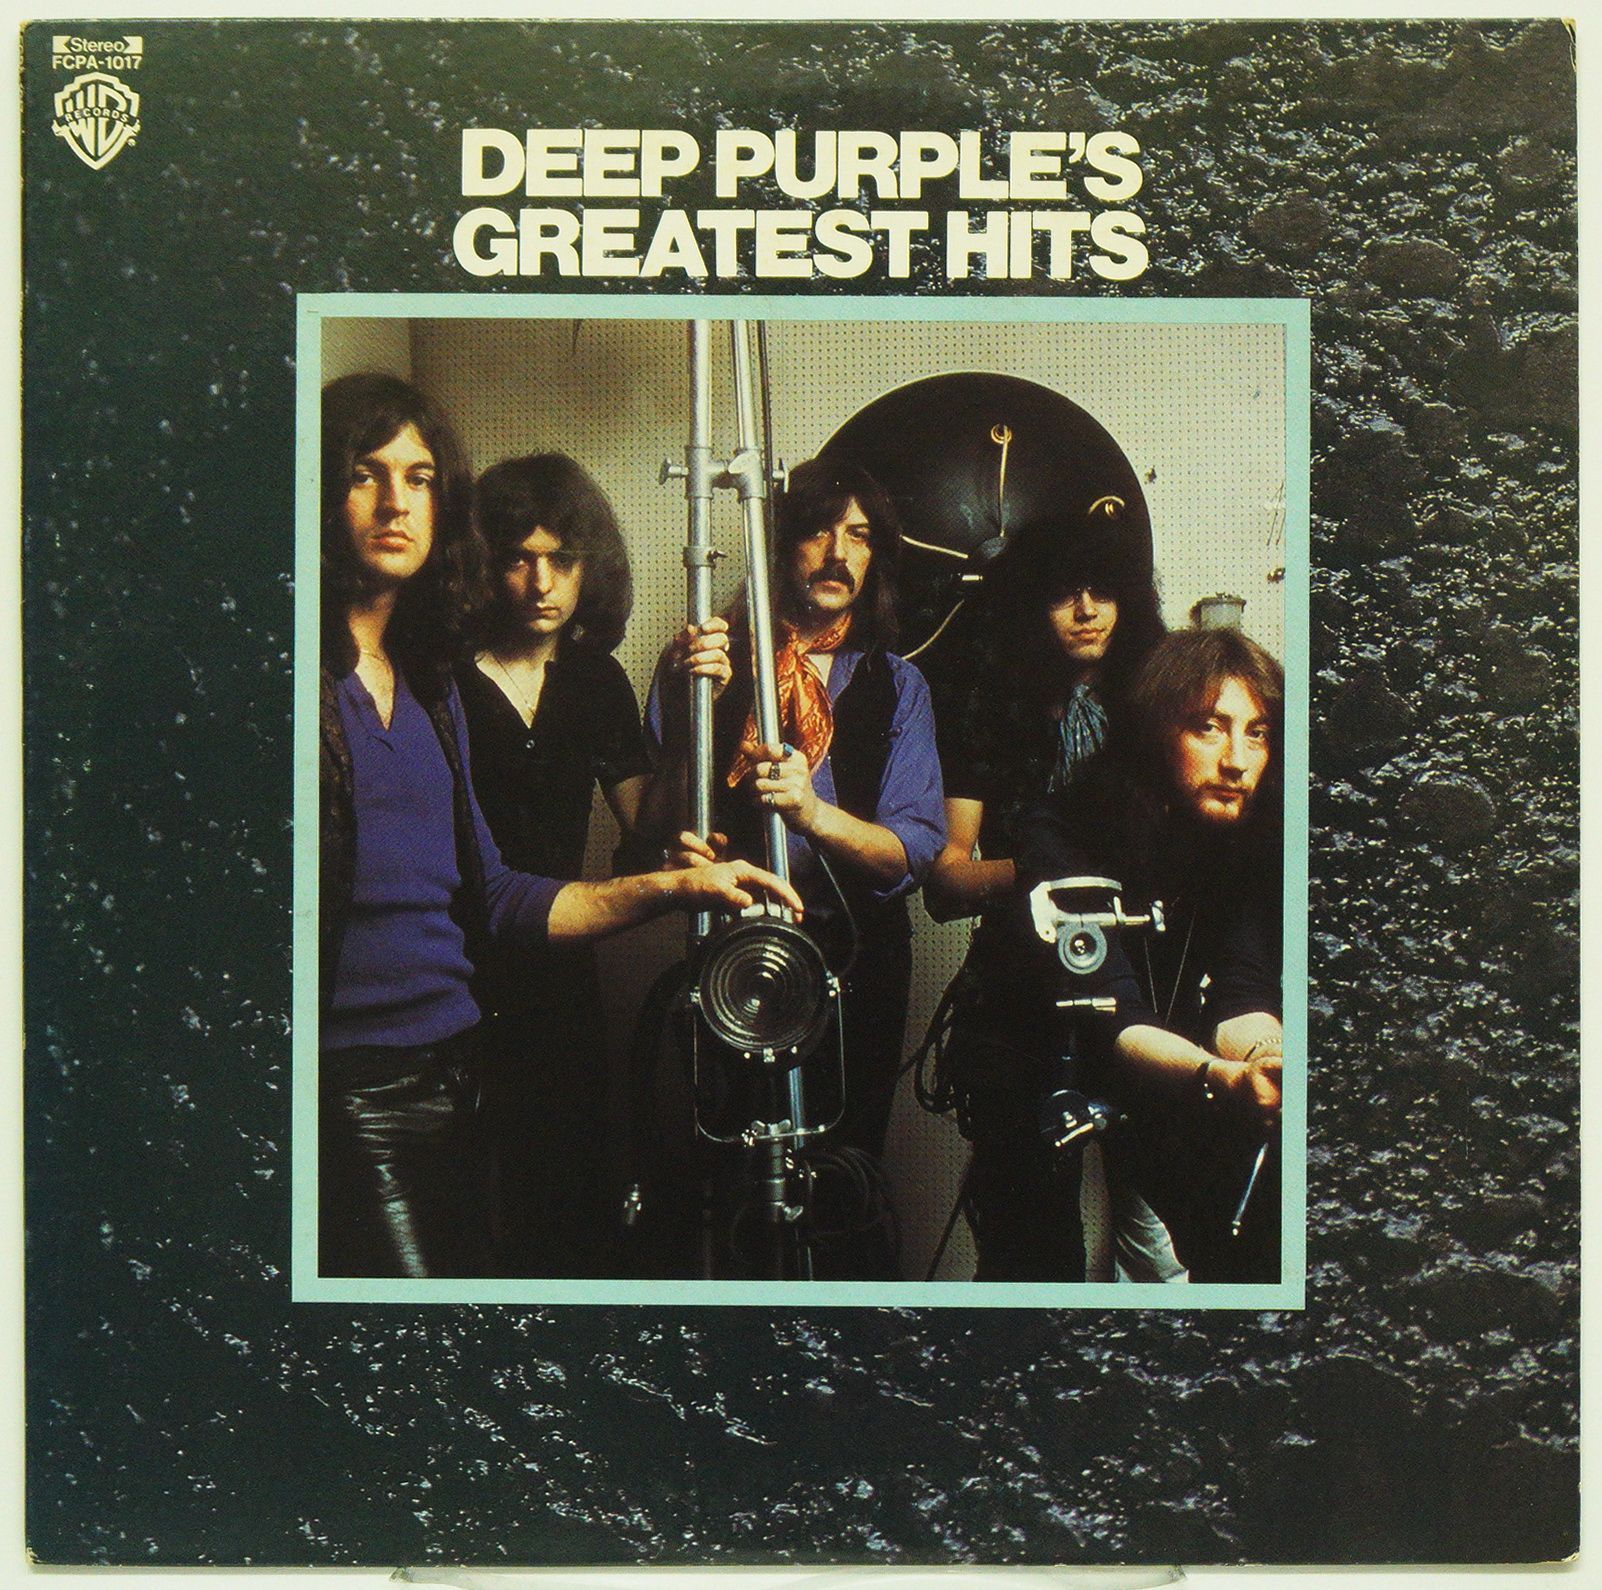 Дип перпл машин. Обложки LP Deep Purple. Группа Deep Purple Greatest Hits Imajes. Deep Purple Burn 1974 LP. Deep Purple in Rock 1970 обложка.